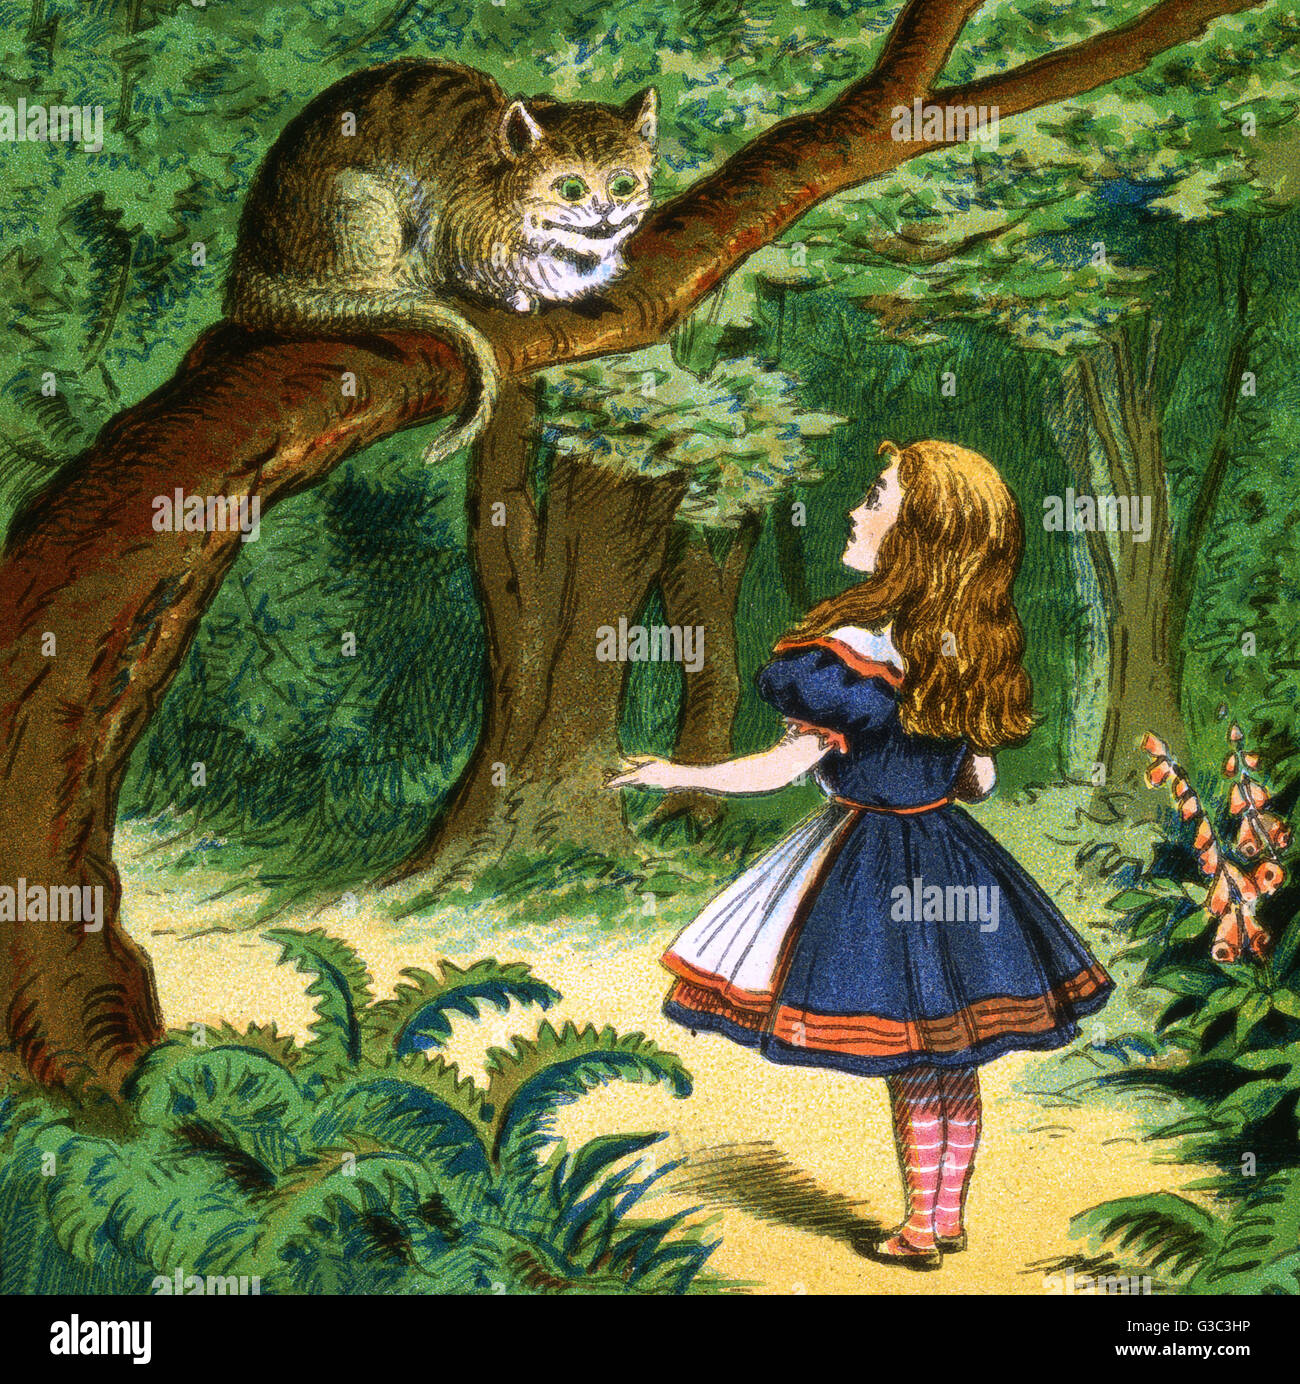 Alice in Wonderland, Alice tiene una conversación con un Cheshire Cat. Fecha: De principios de siglo XX. Foto de stock